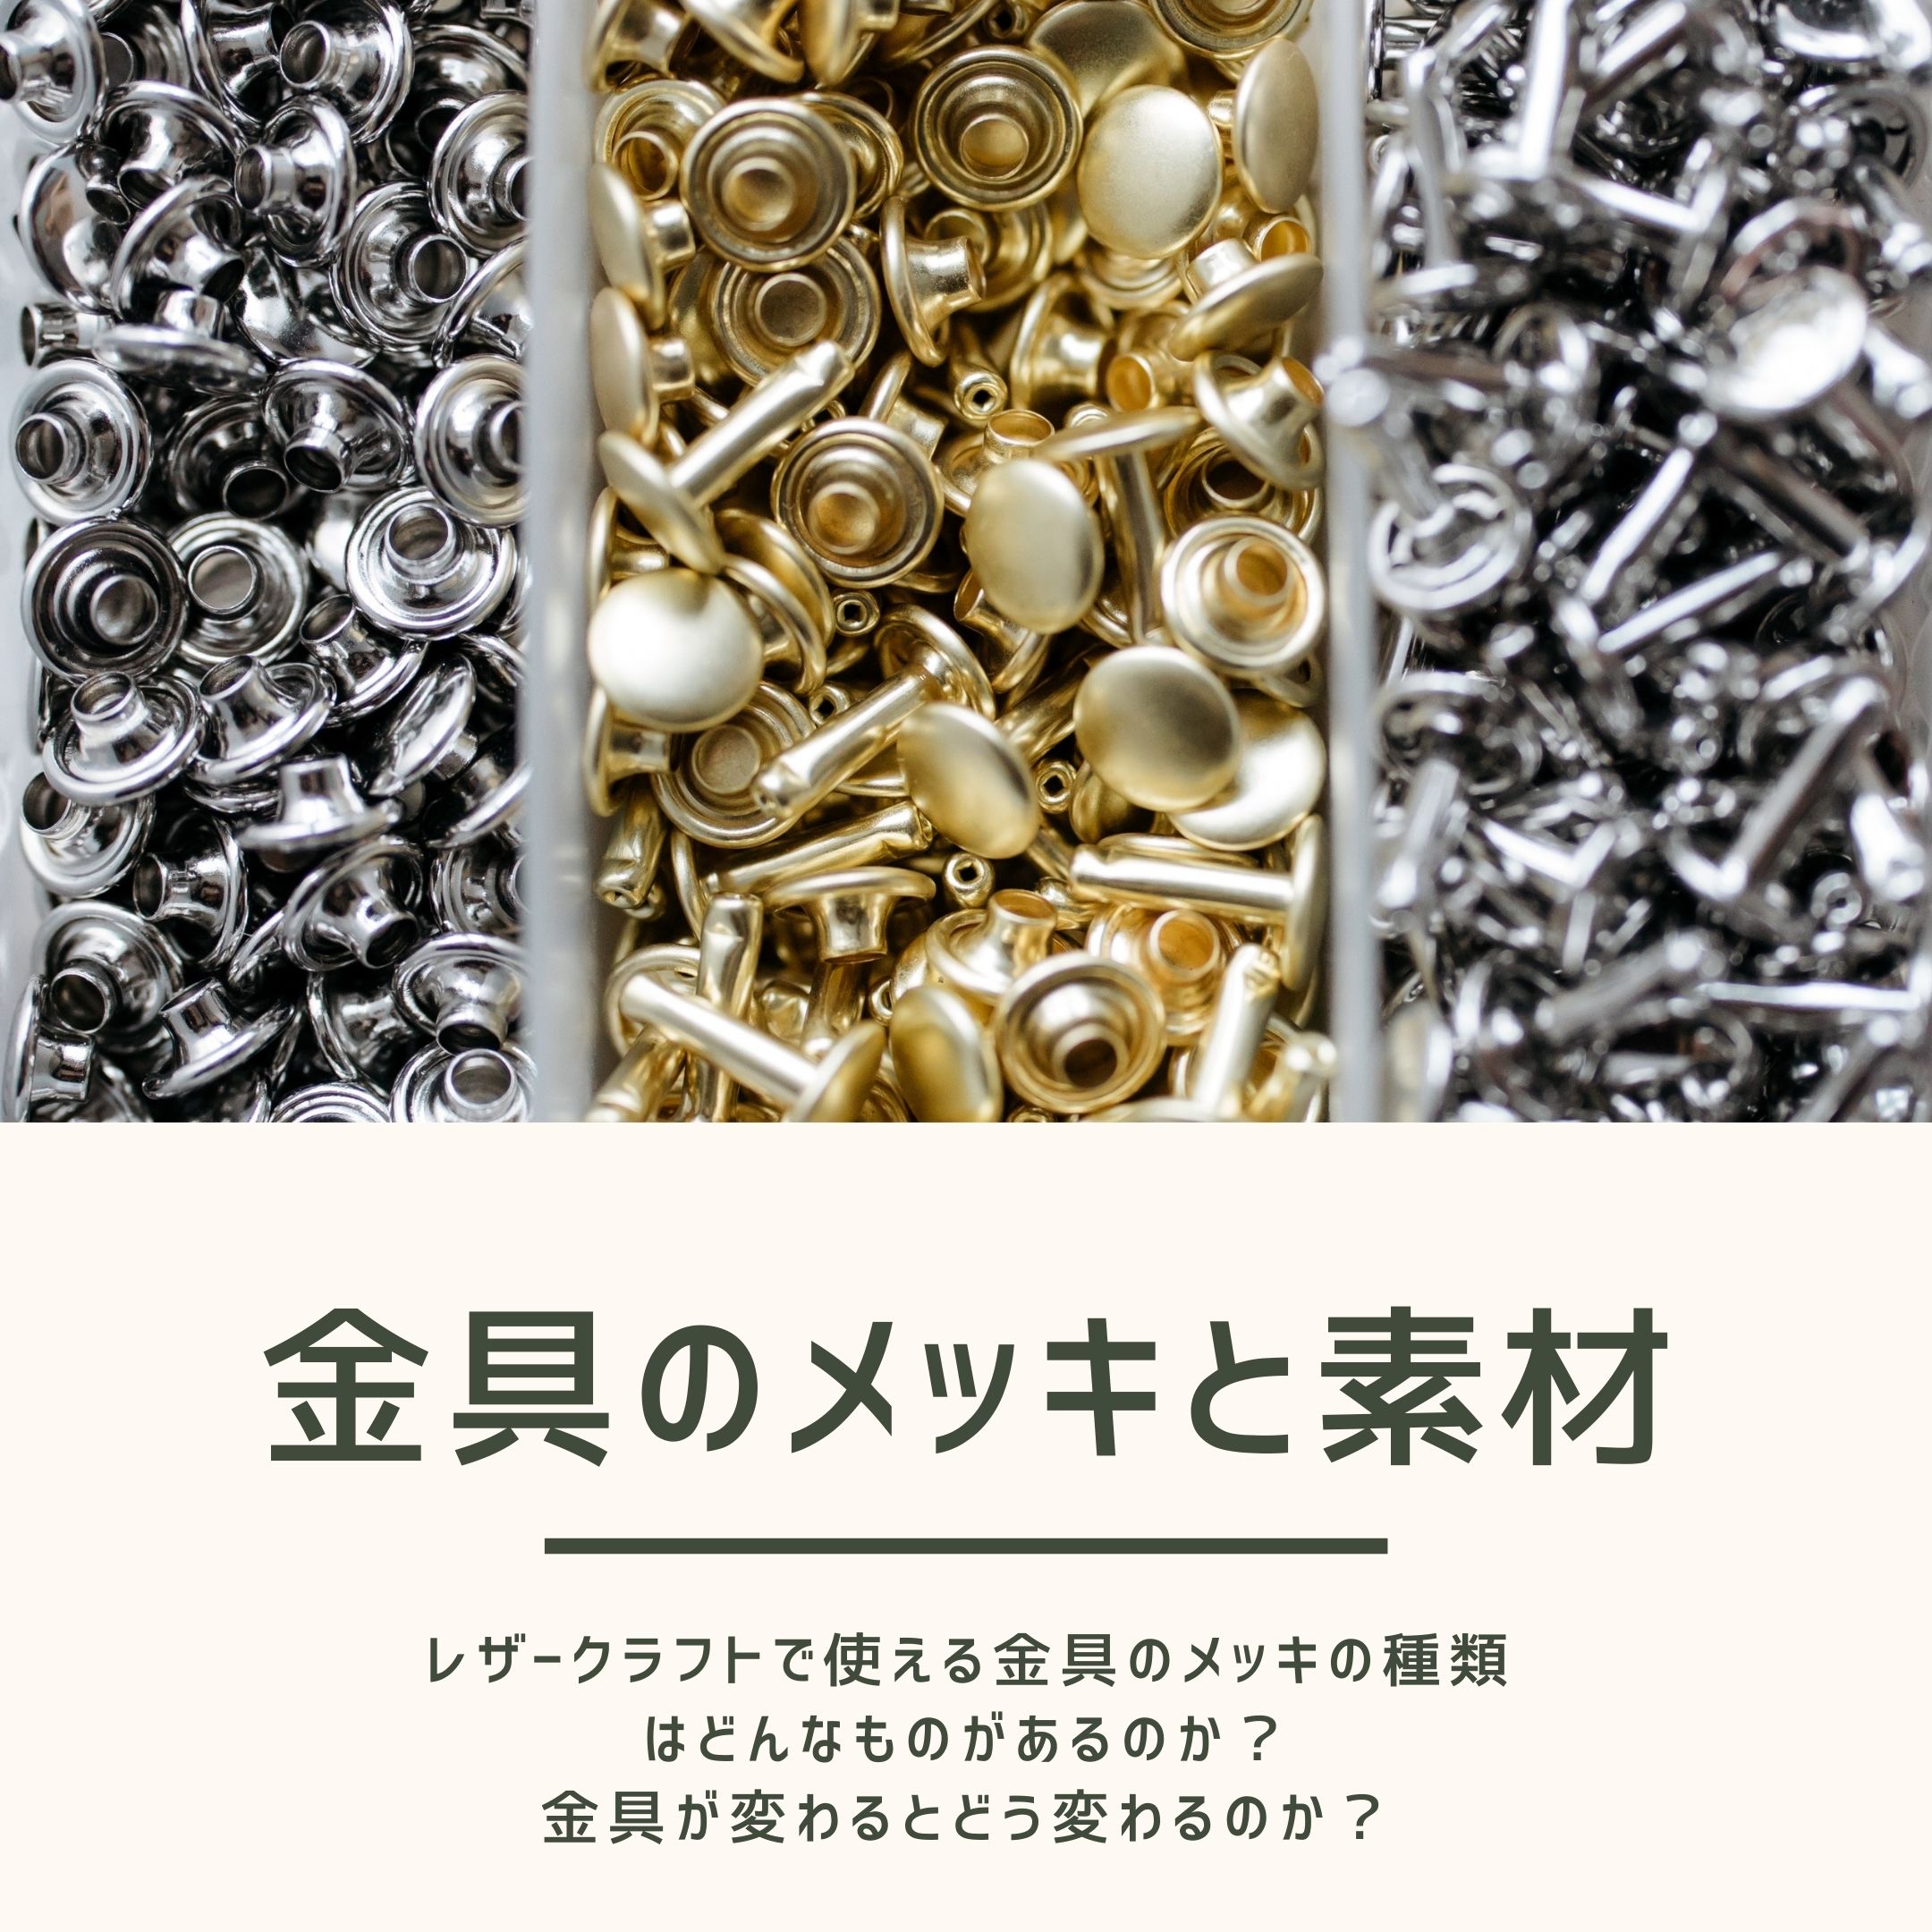 レザークラフト金具のメッキの色と素材(真鍮、亜鉛合金、鉄)